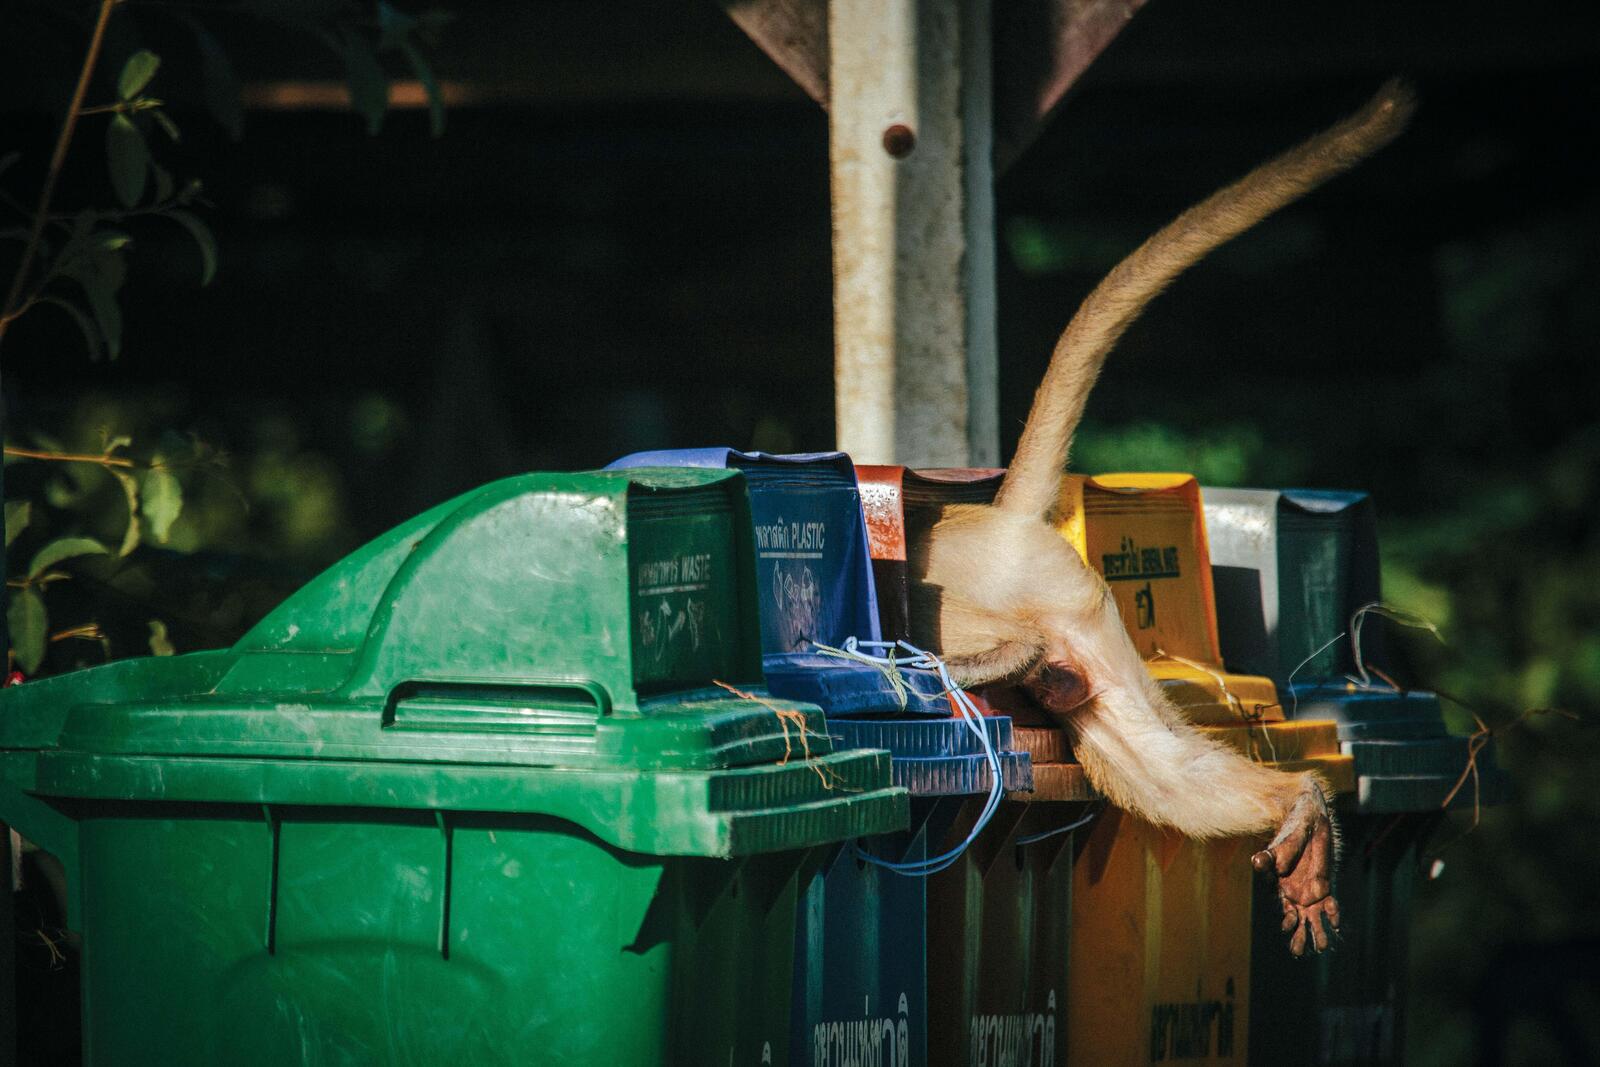 macaque in trash